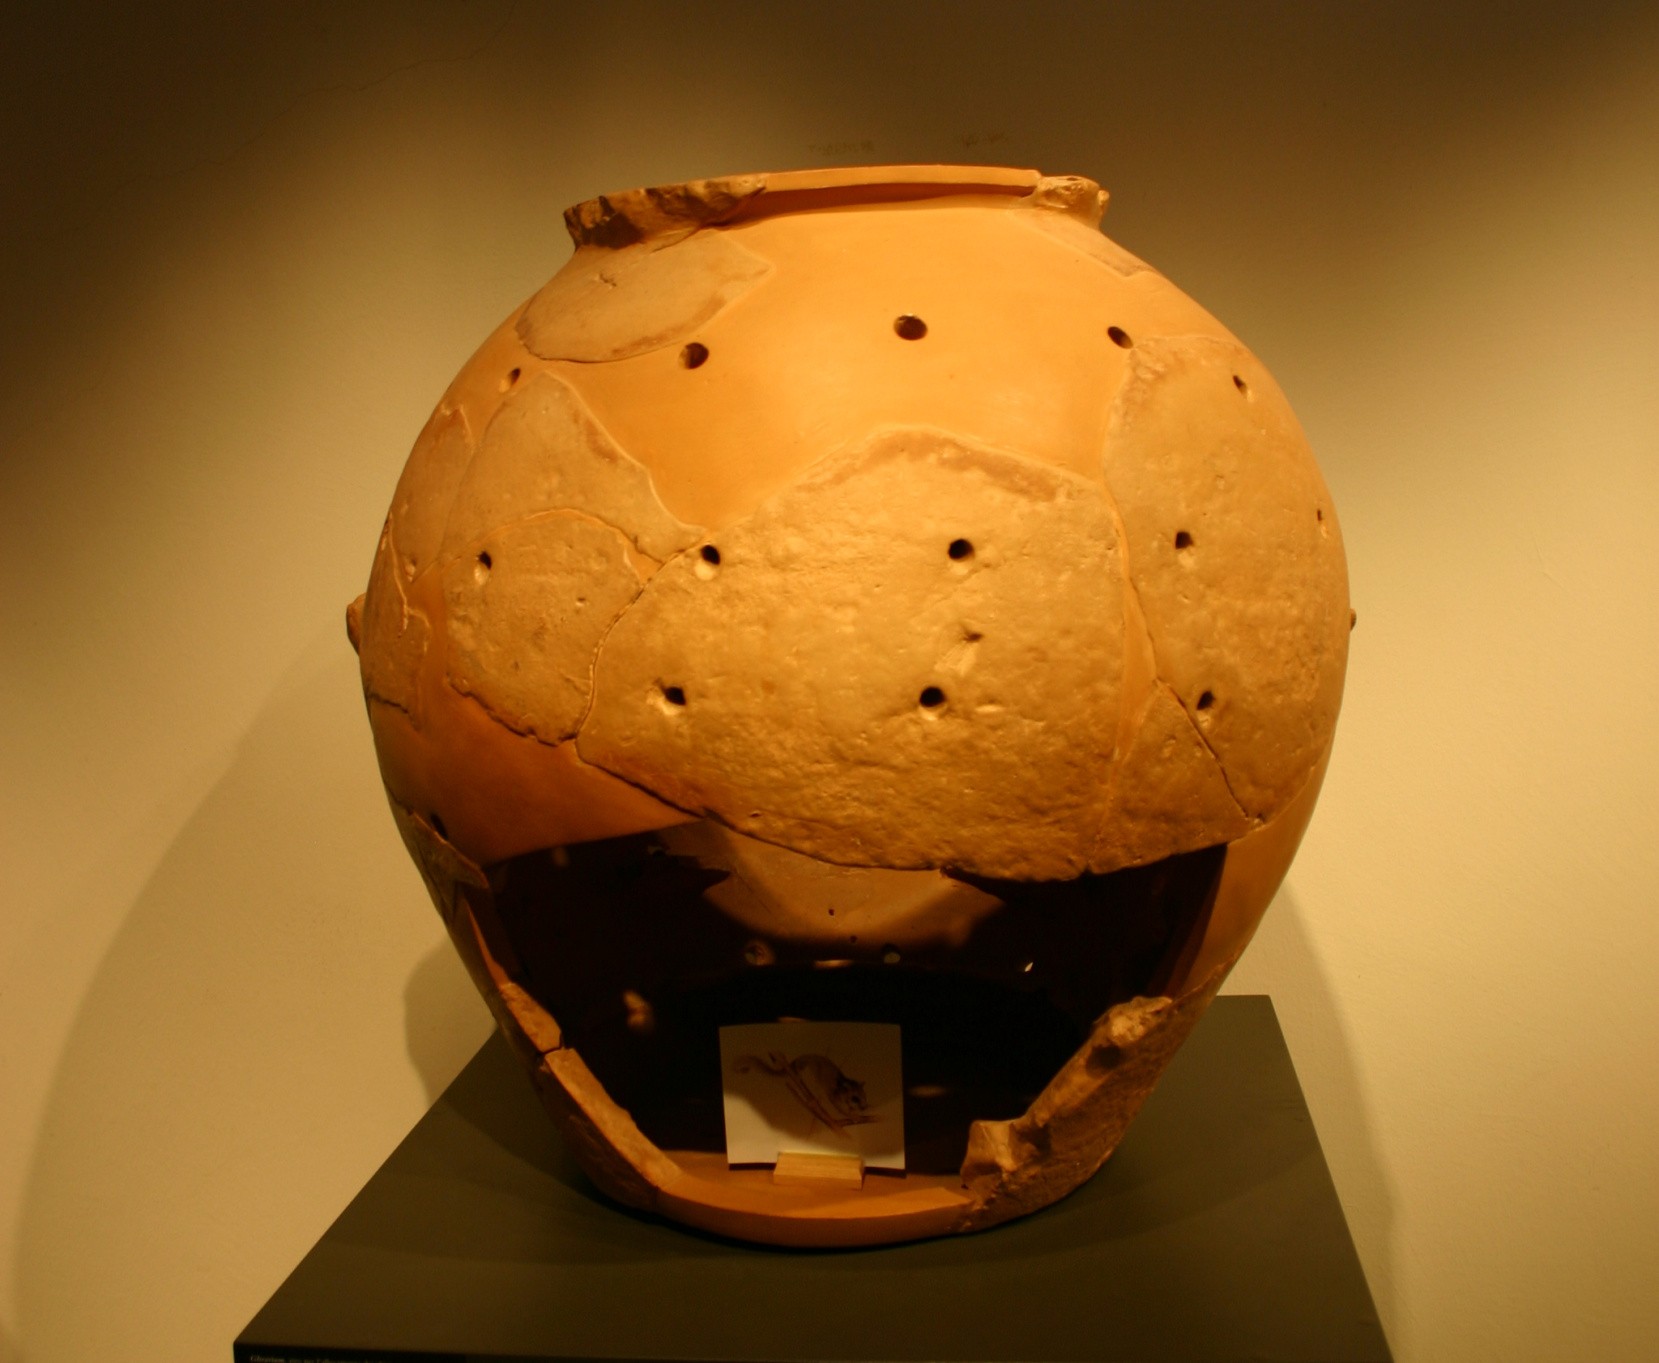 گلیاریئم ایک ٹیراکوٹا کنٹینر ہے جو خوردنی ڈورمیس رکھنے کے لیے استعمال ہوتا ہے۔ ان جانوروں کو Etruscan دور میں اور بعد میں رومن سلطنت میں ایک نفاست سمجھا جاتا تھا۔